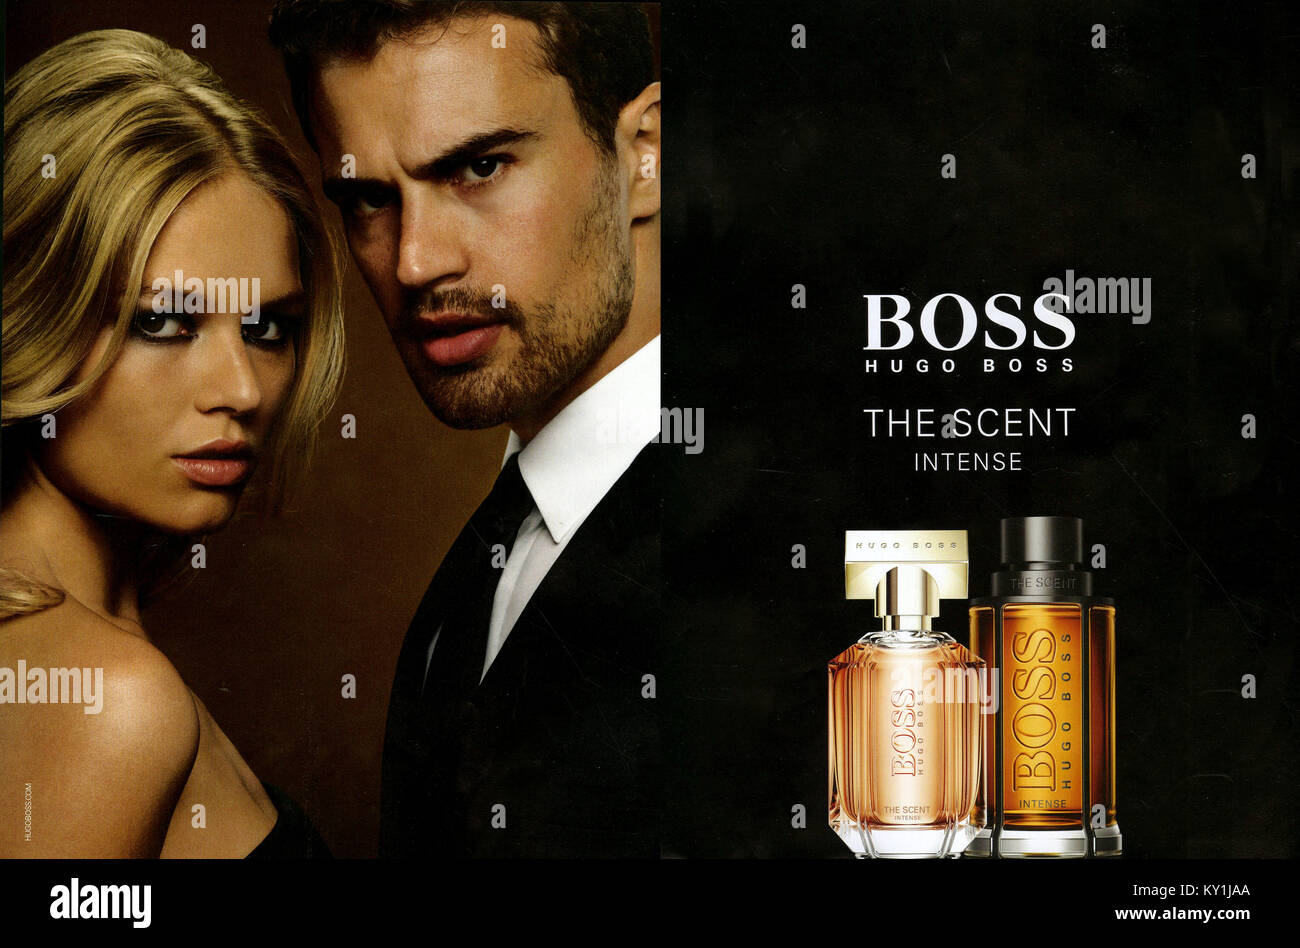 hugo boss perfume uk sale